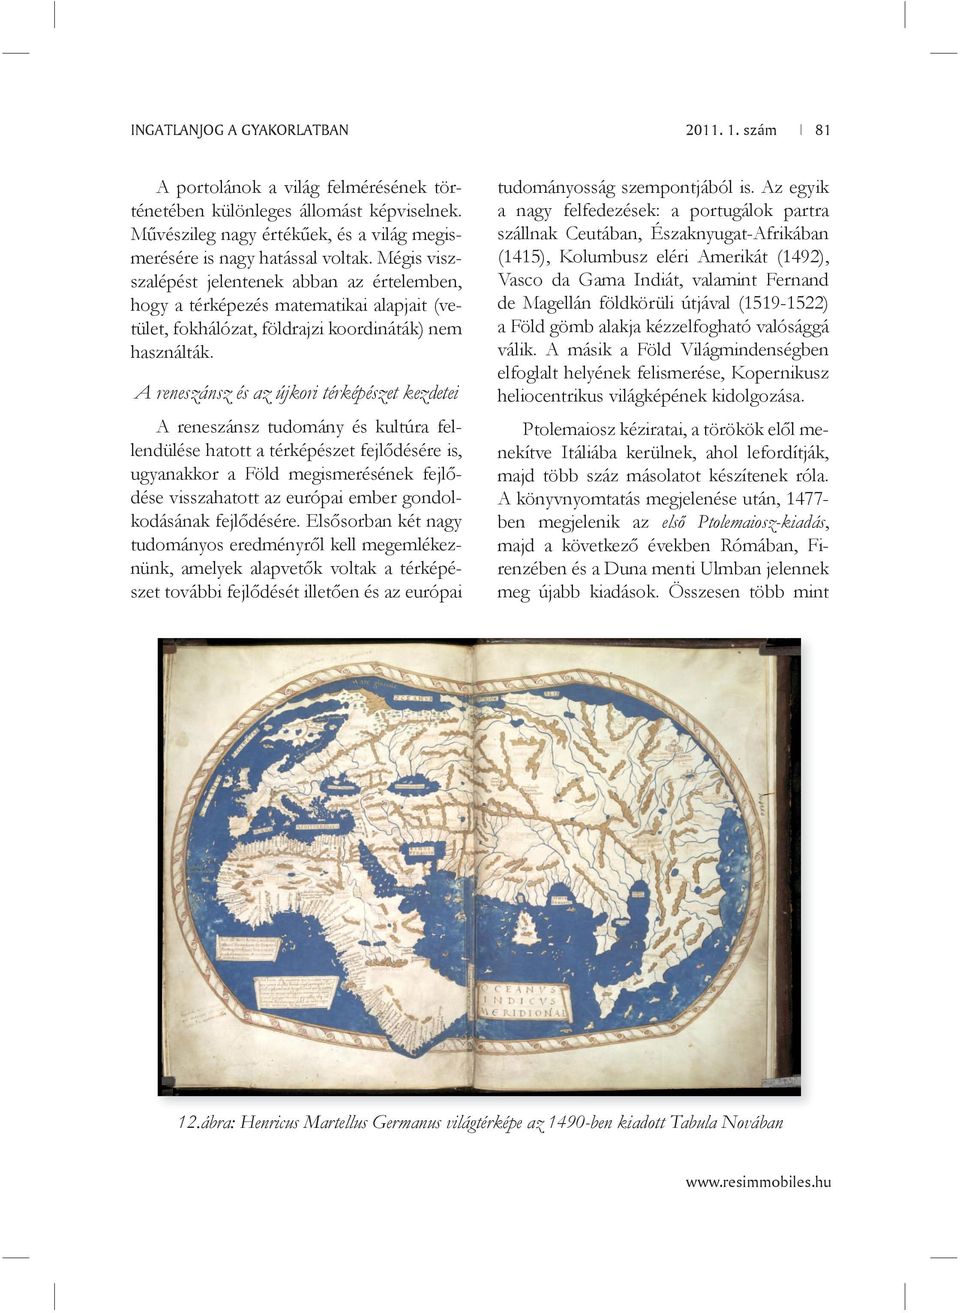 A reneszánsz és az újkori térképészet kezdetei A reneszánsz tudomány és kultúra fellendülése hatott a térképészet fejlődésére is, ugyanakkor a Föld megismerésének fejlődése visszahatott az európai